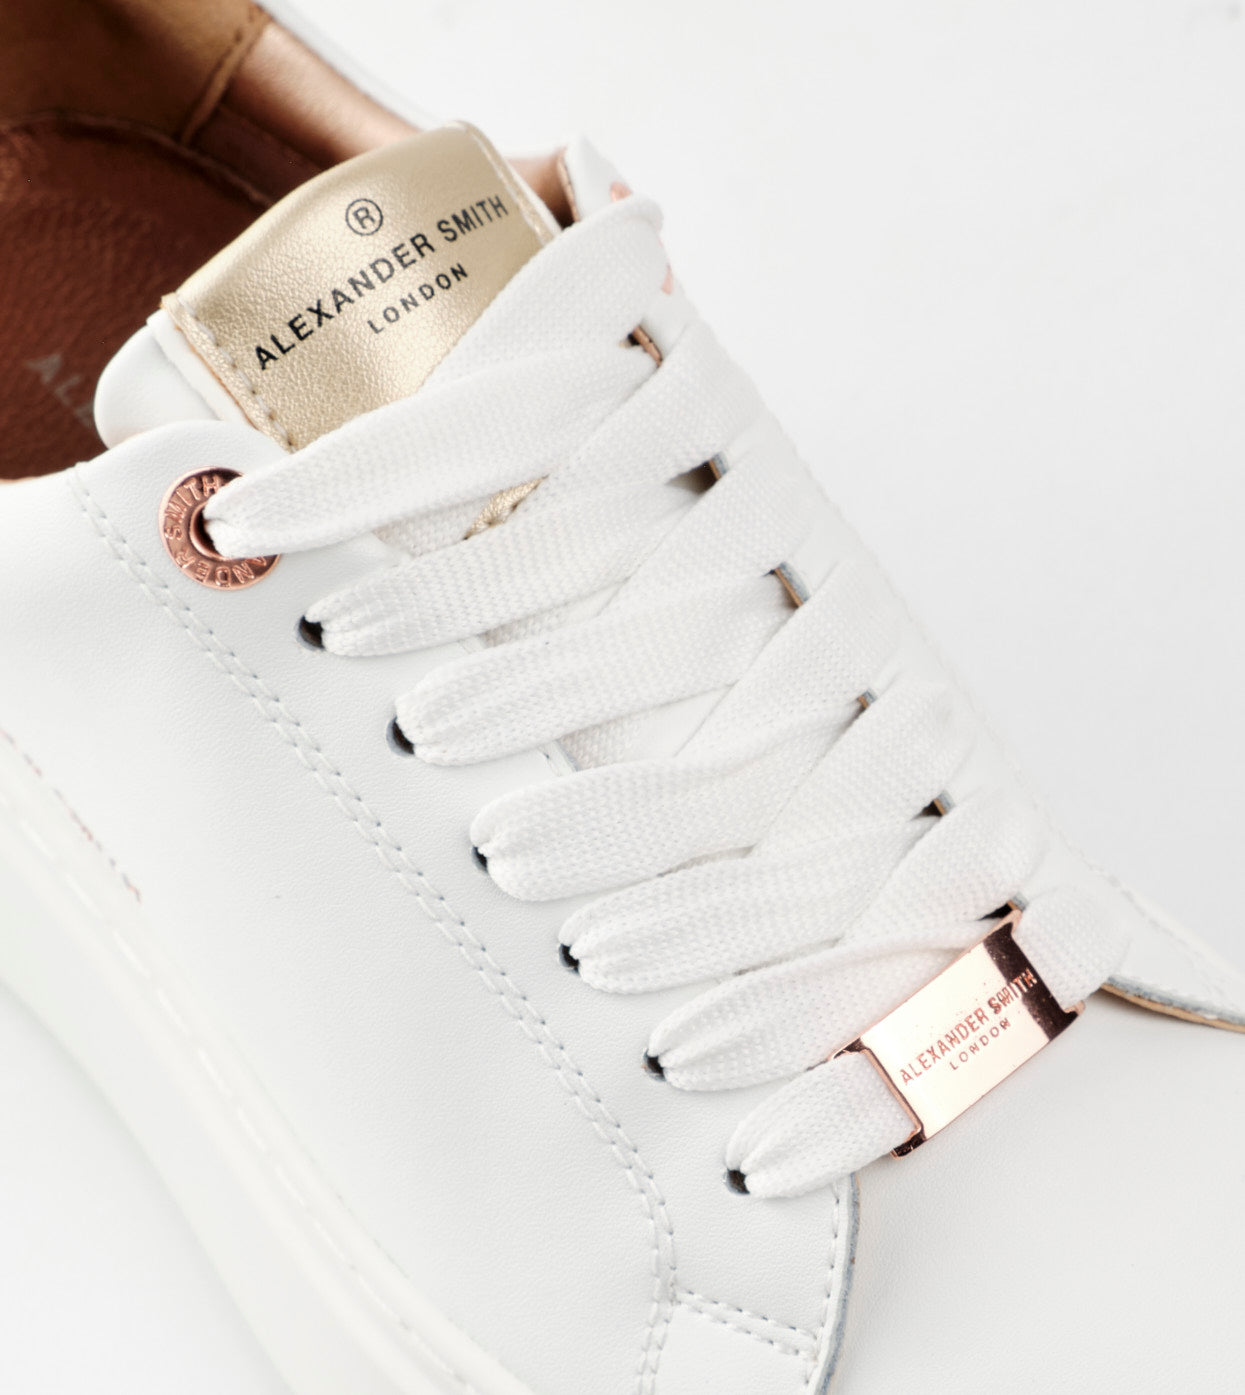 Sneaker in Pelle Alexander Smith / Bianco - Ideal Moda